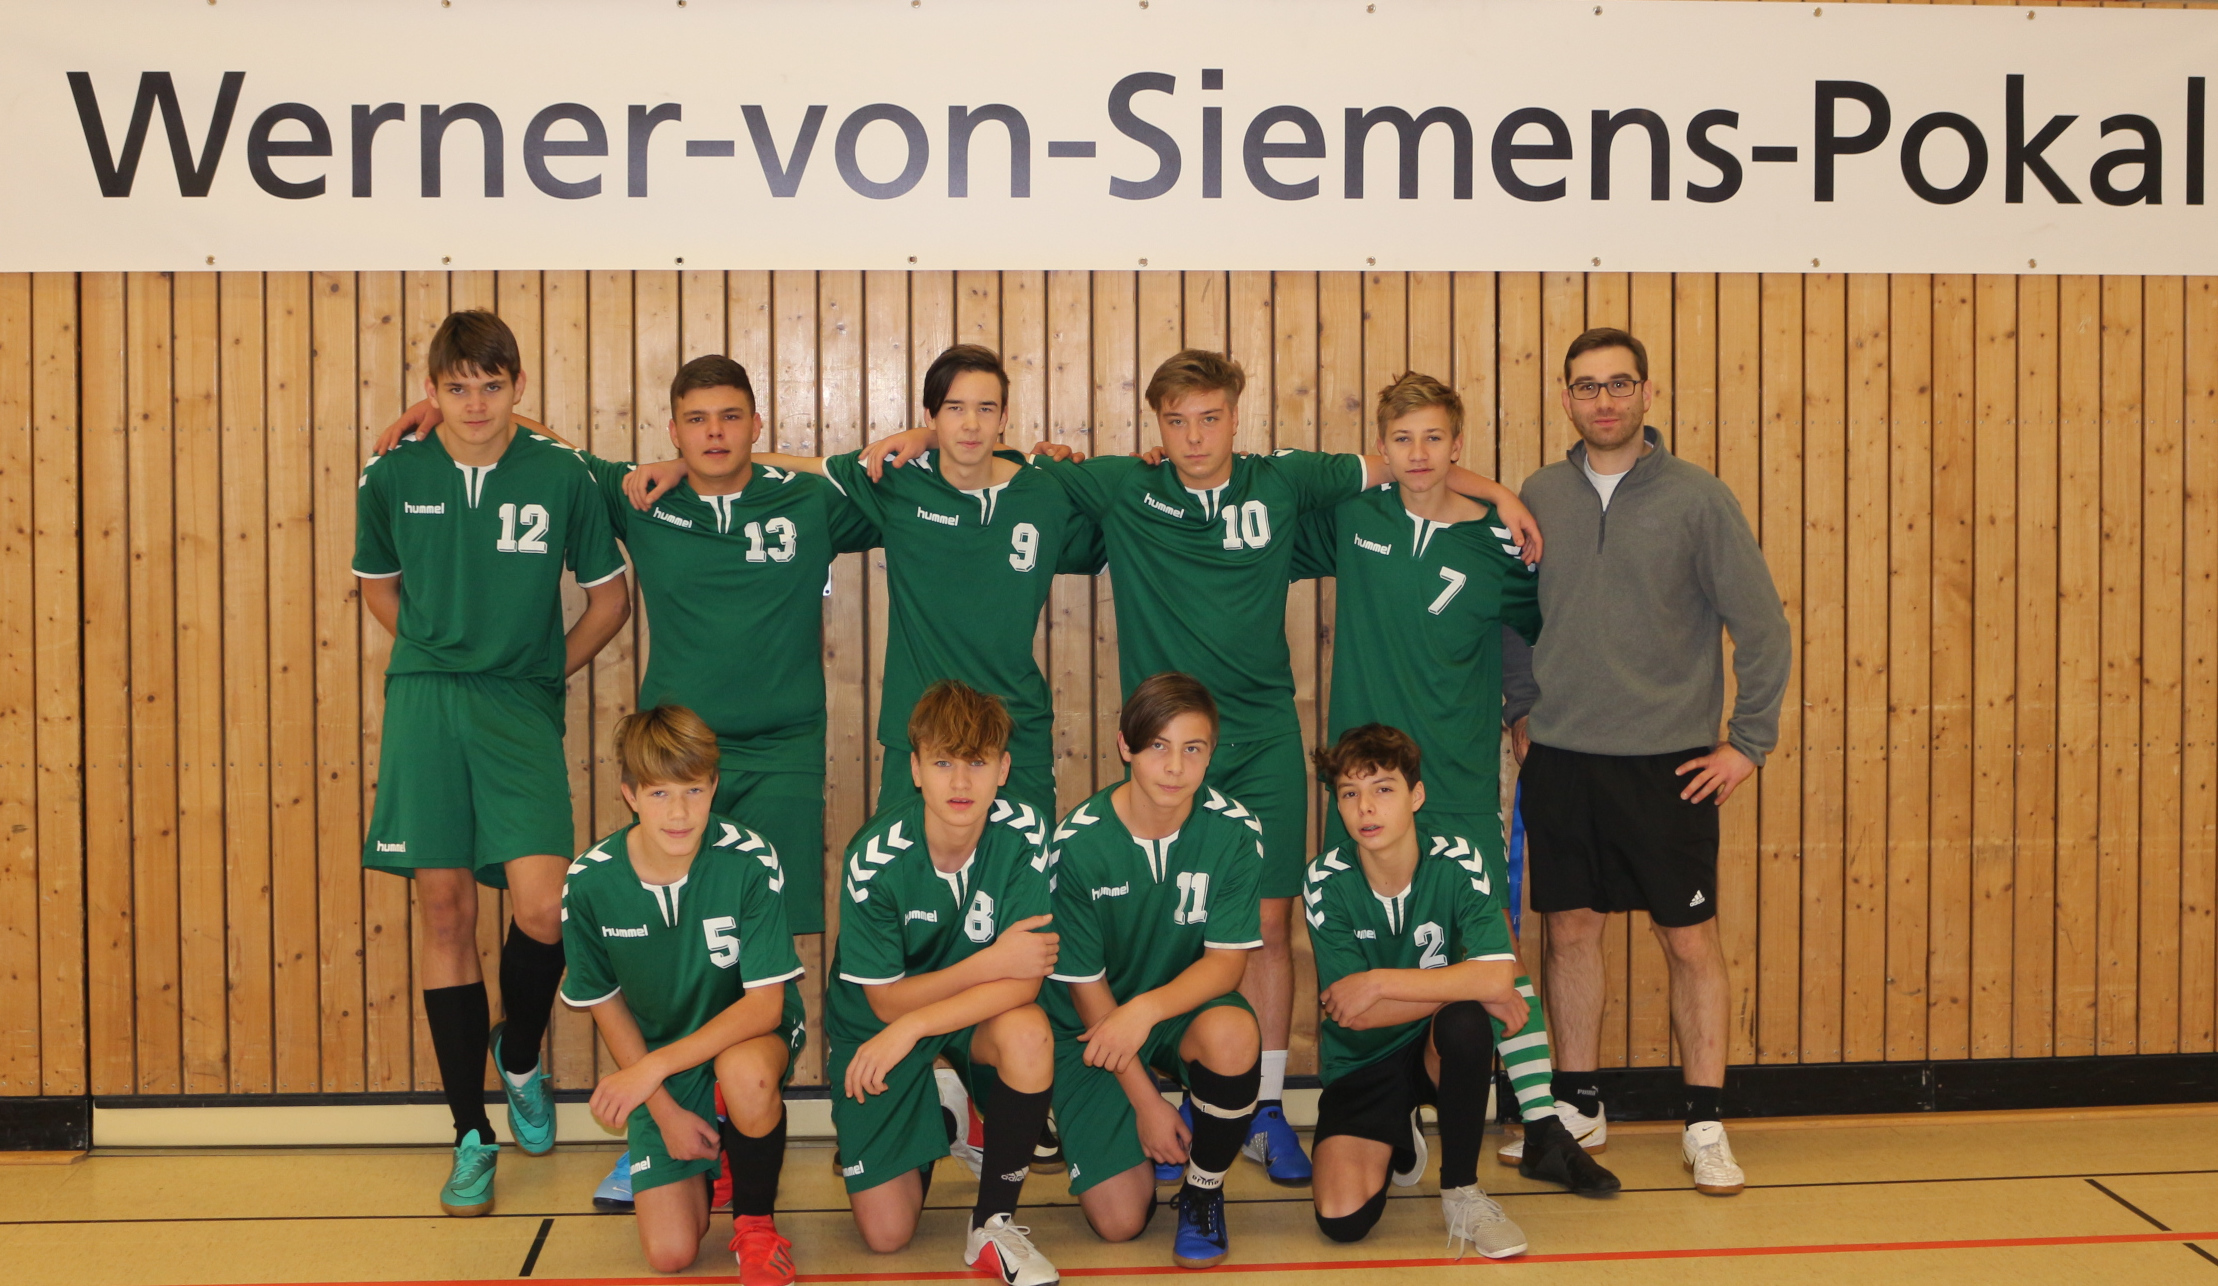 Mannschaft Siemenspokal 2019